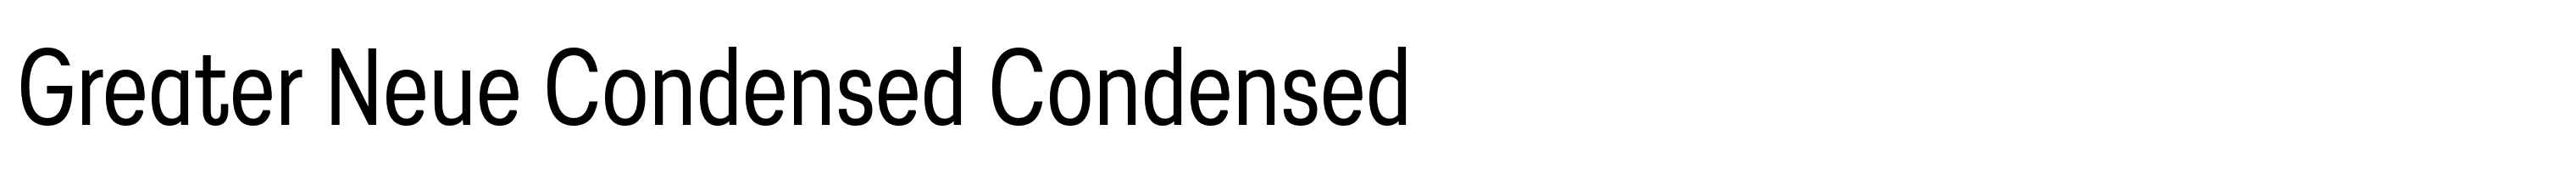 Greater Neue Condensed Condensed